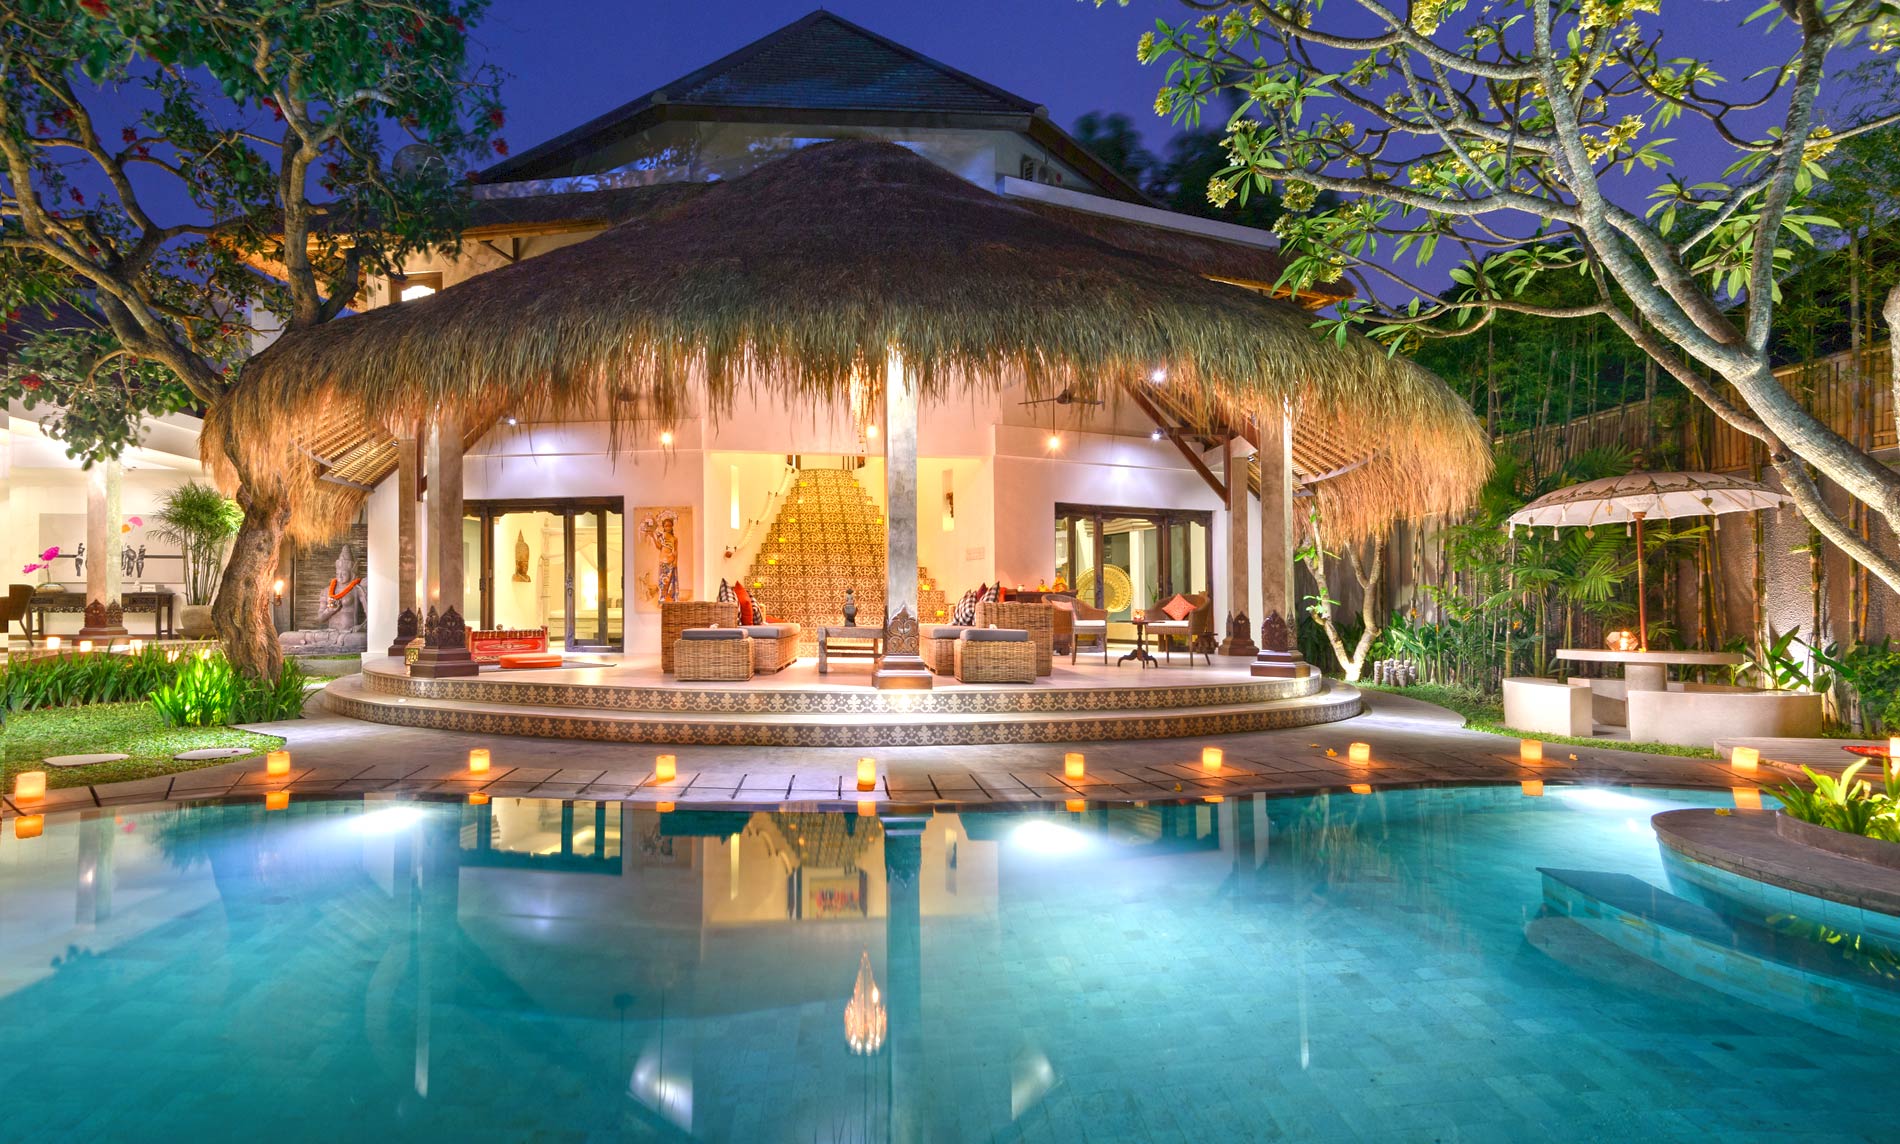 Juragan Villas Bali - located in the Seminyak district, view our Bali Villas Location